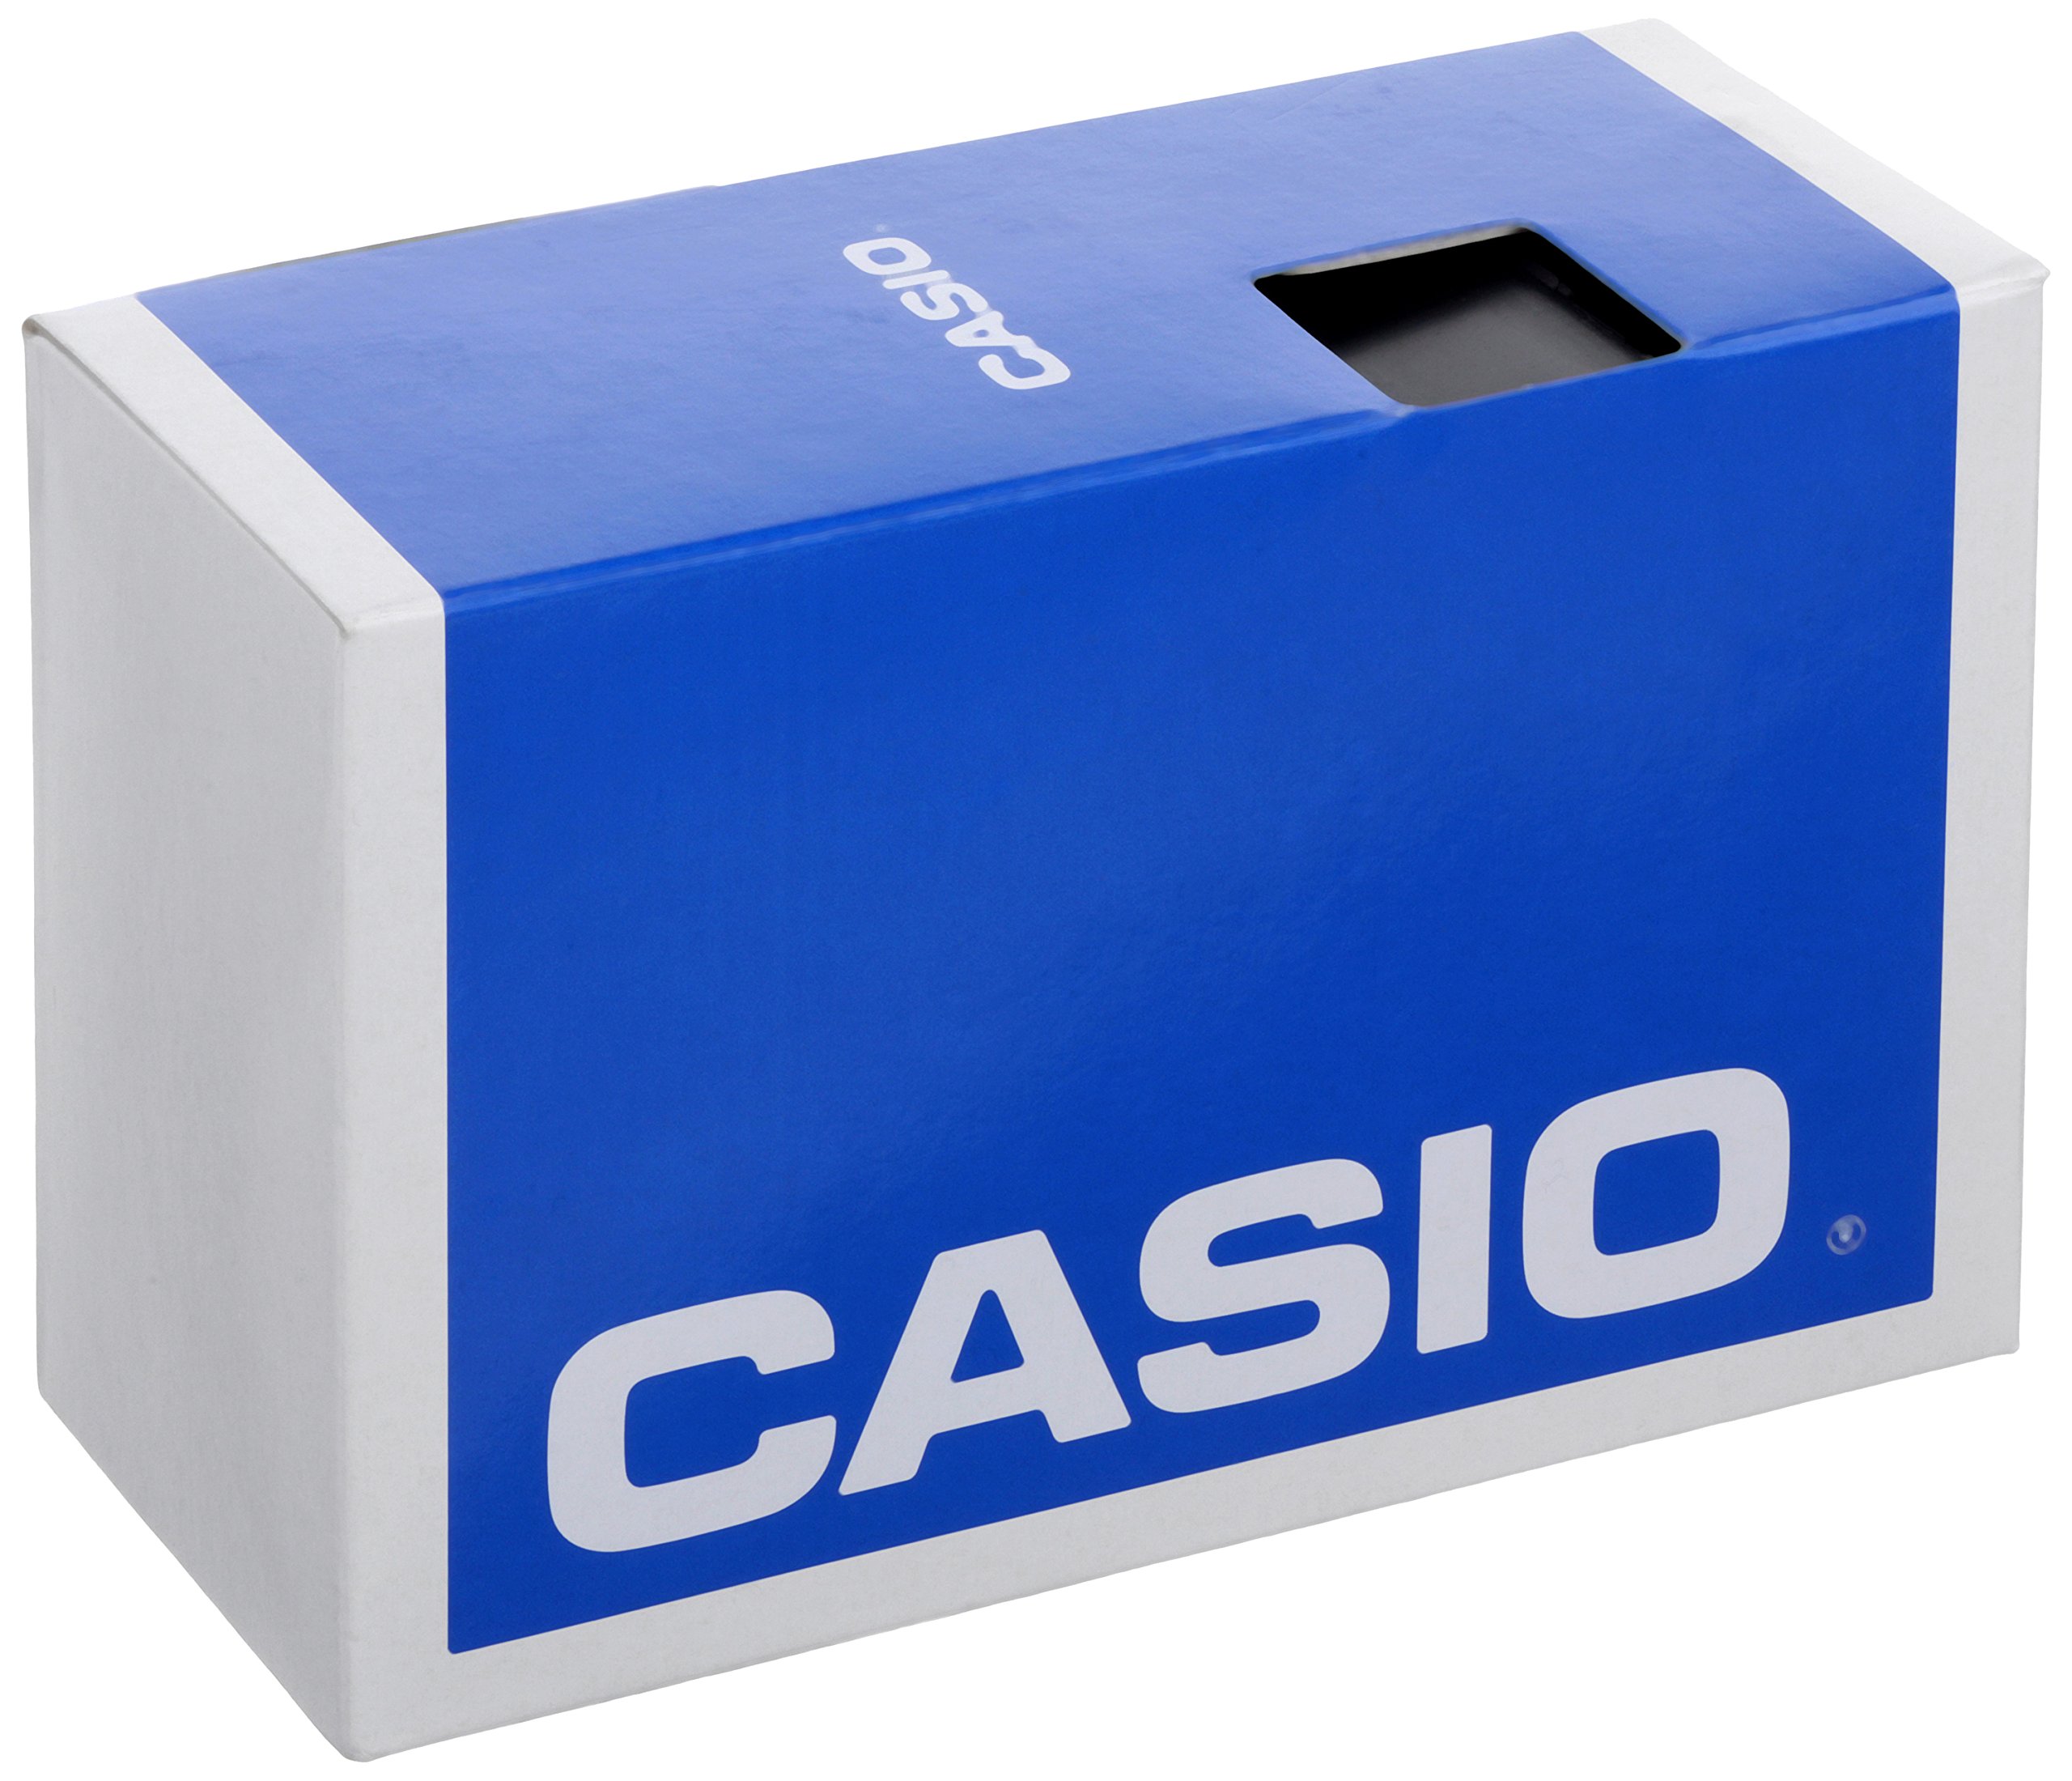 Casio Men's WV58DA-1AV 